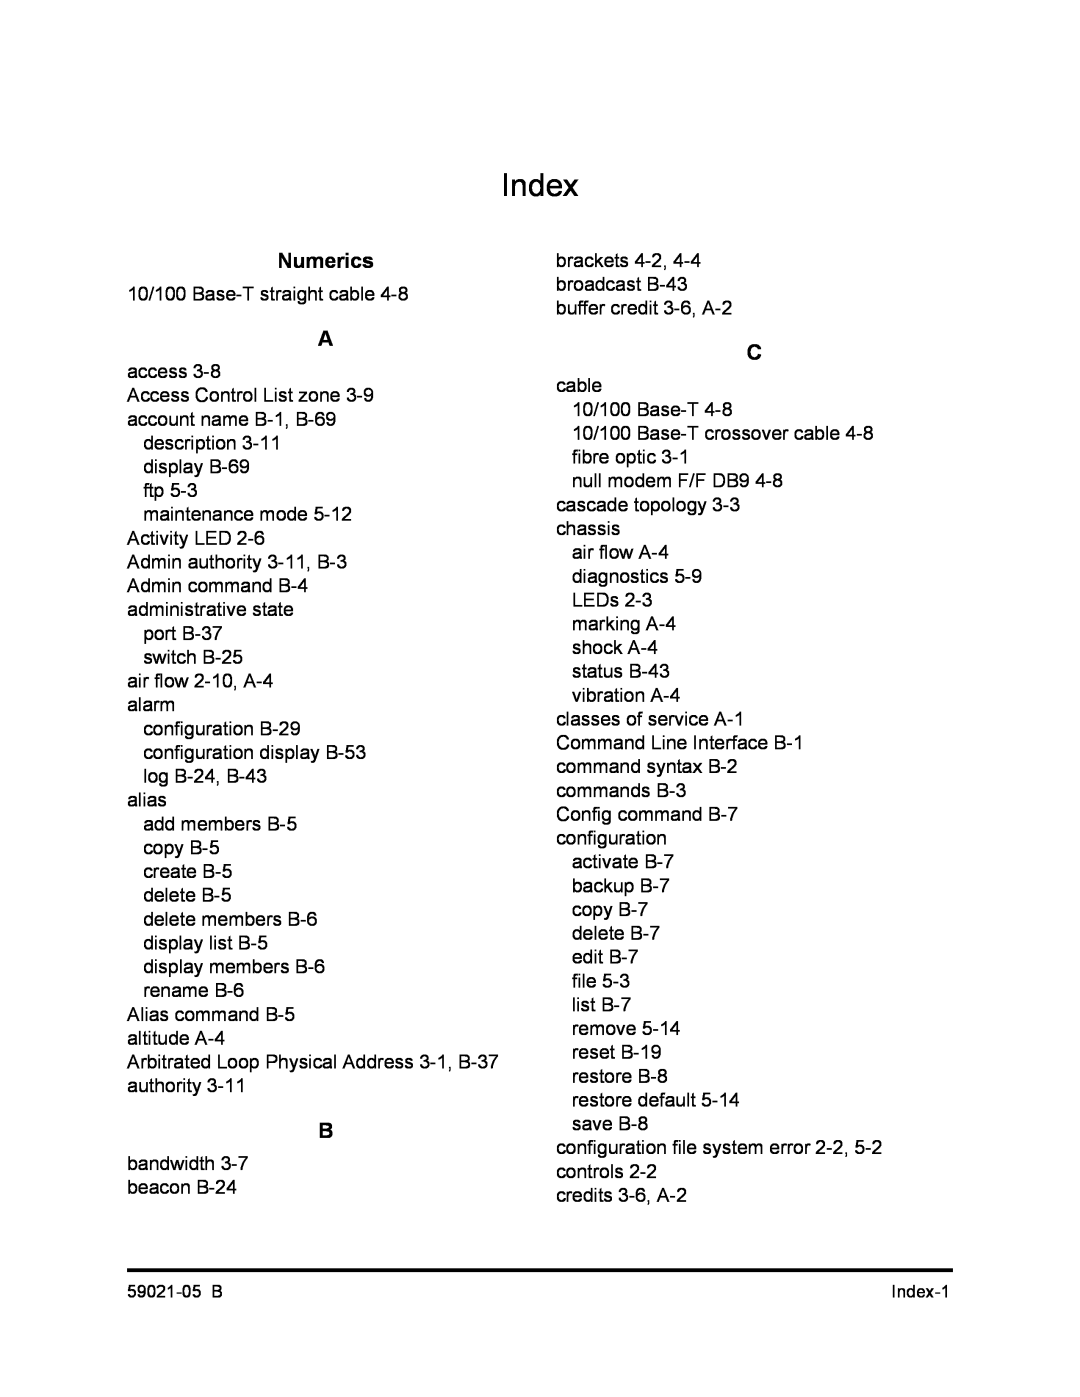 Q-Logic 59021-05 B manual Index, Numerics 